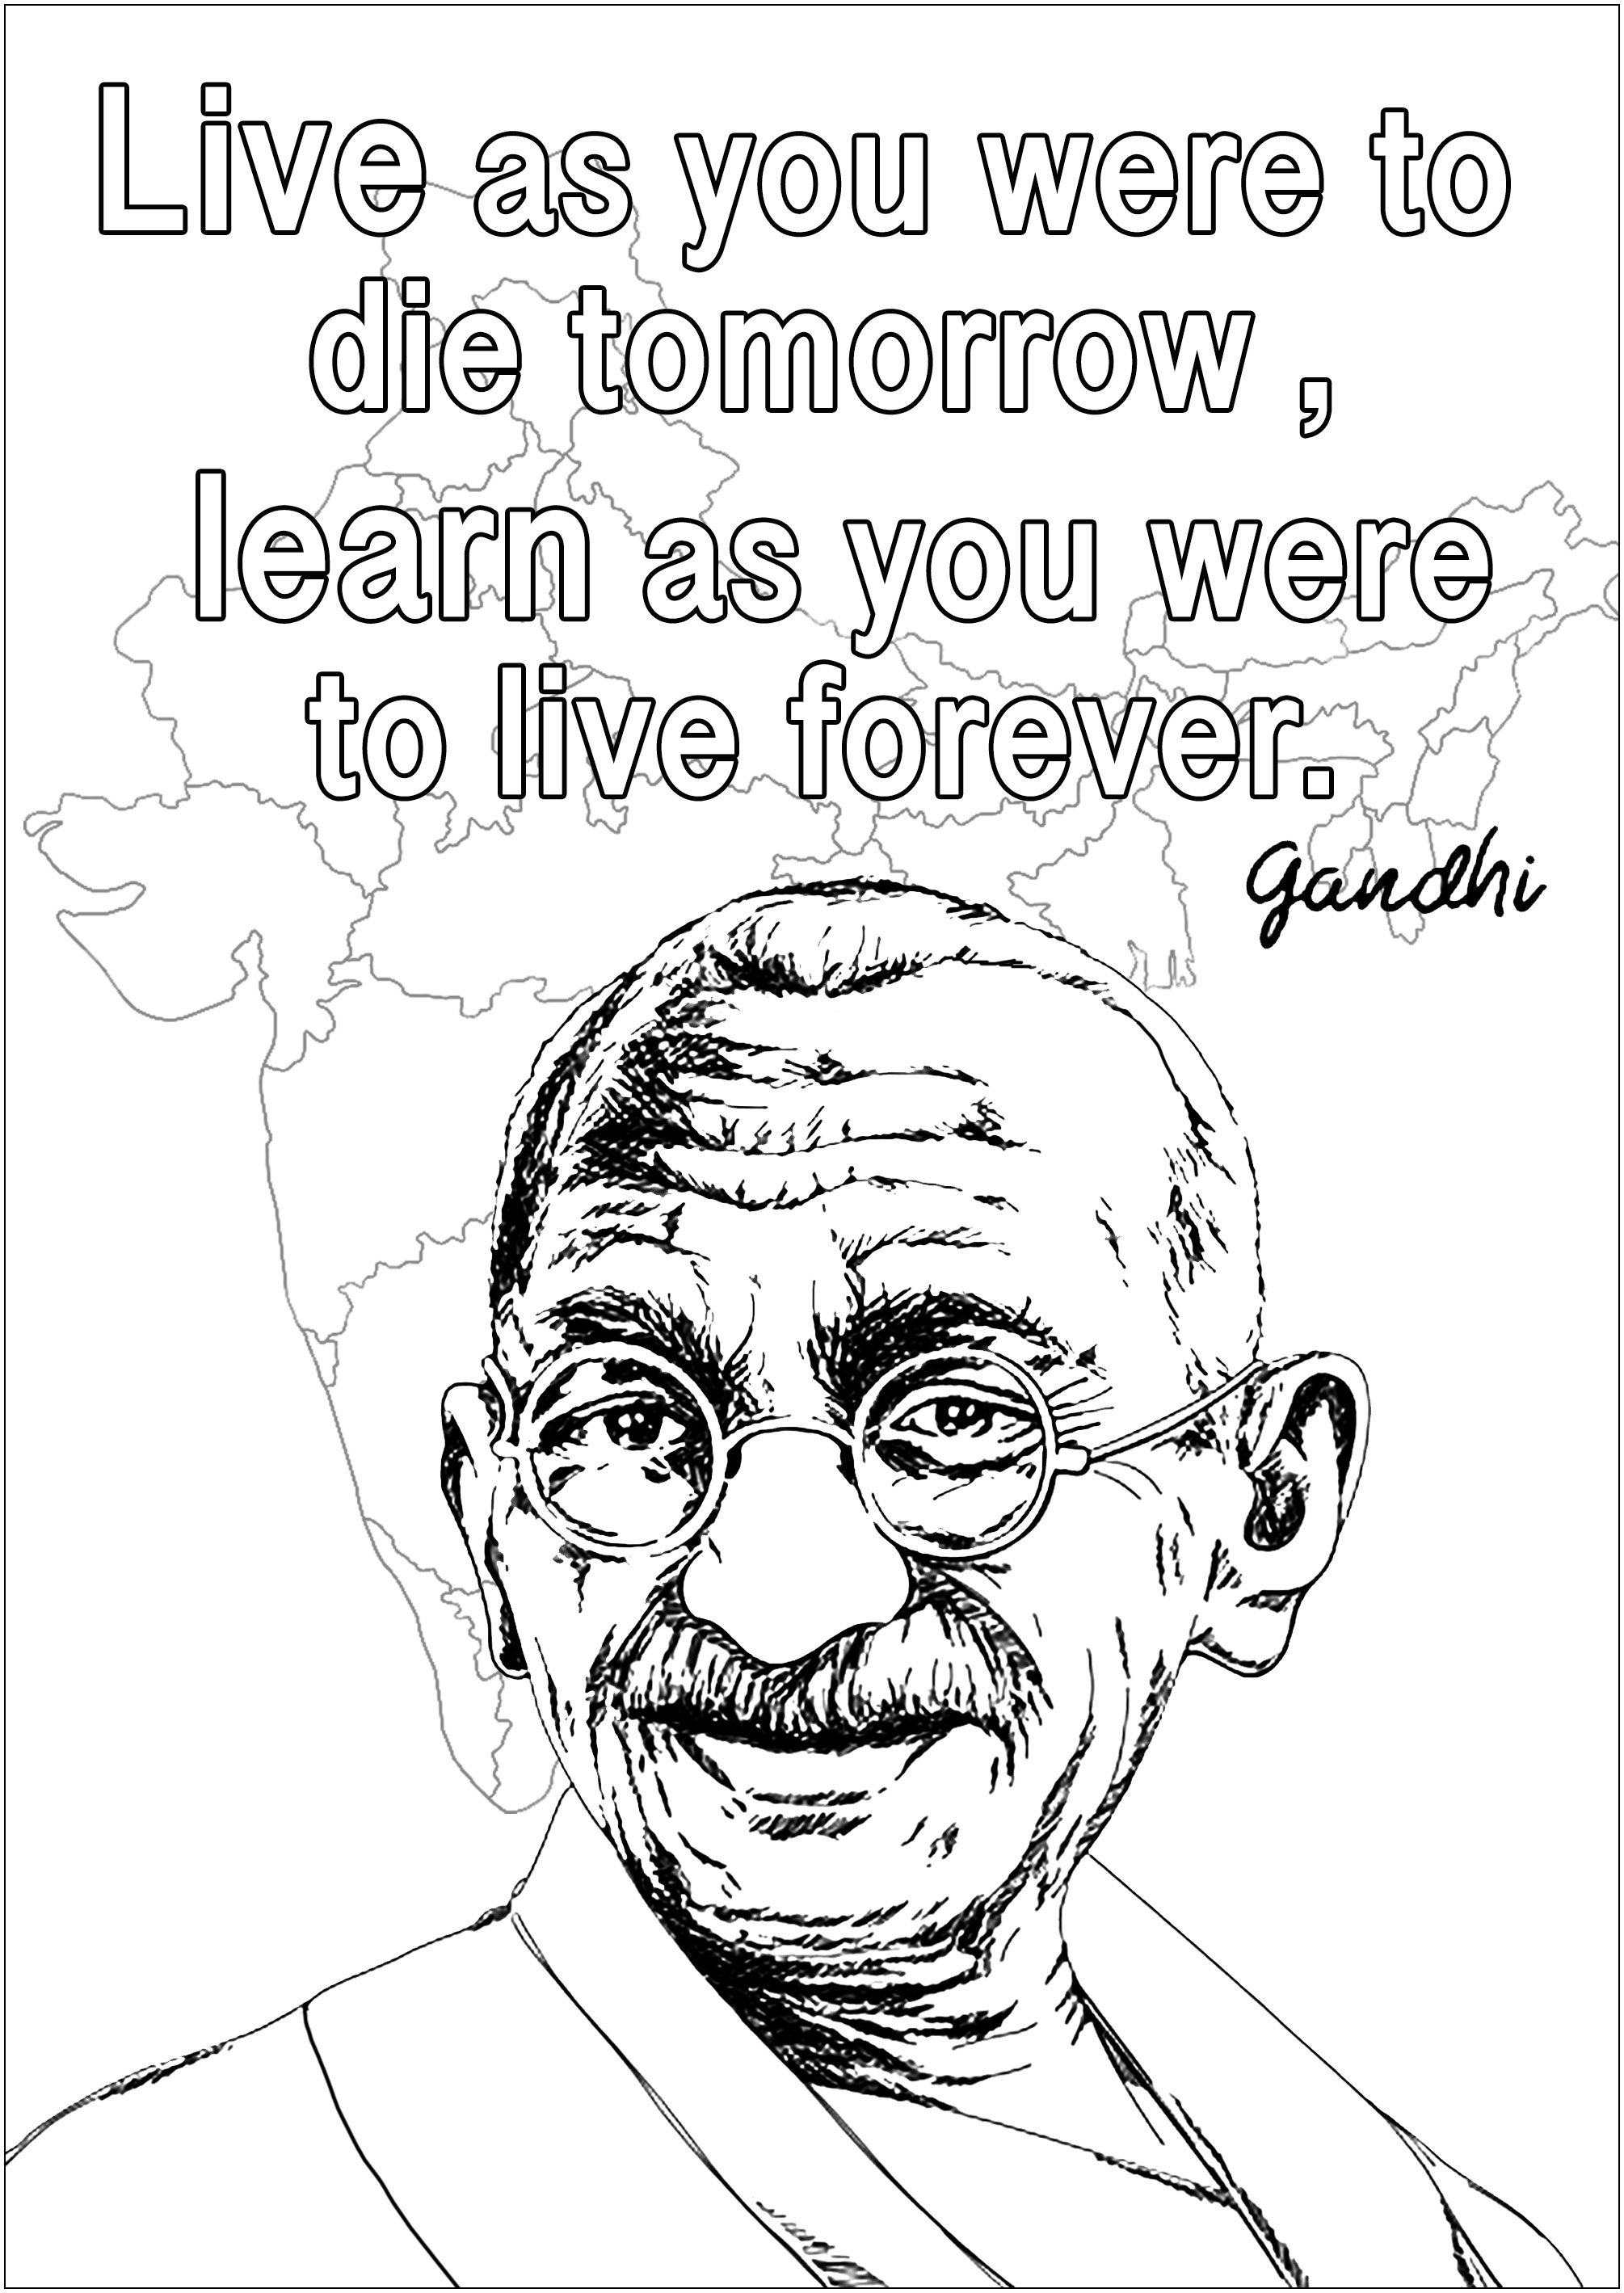 Ausmalbild von Gandhi : 'Lebe, als ob du morgen sterben würdest. Lerne, als ob du ewig leben würdest.'